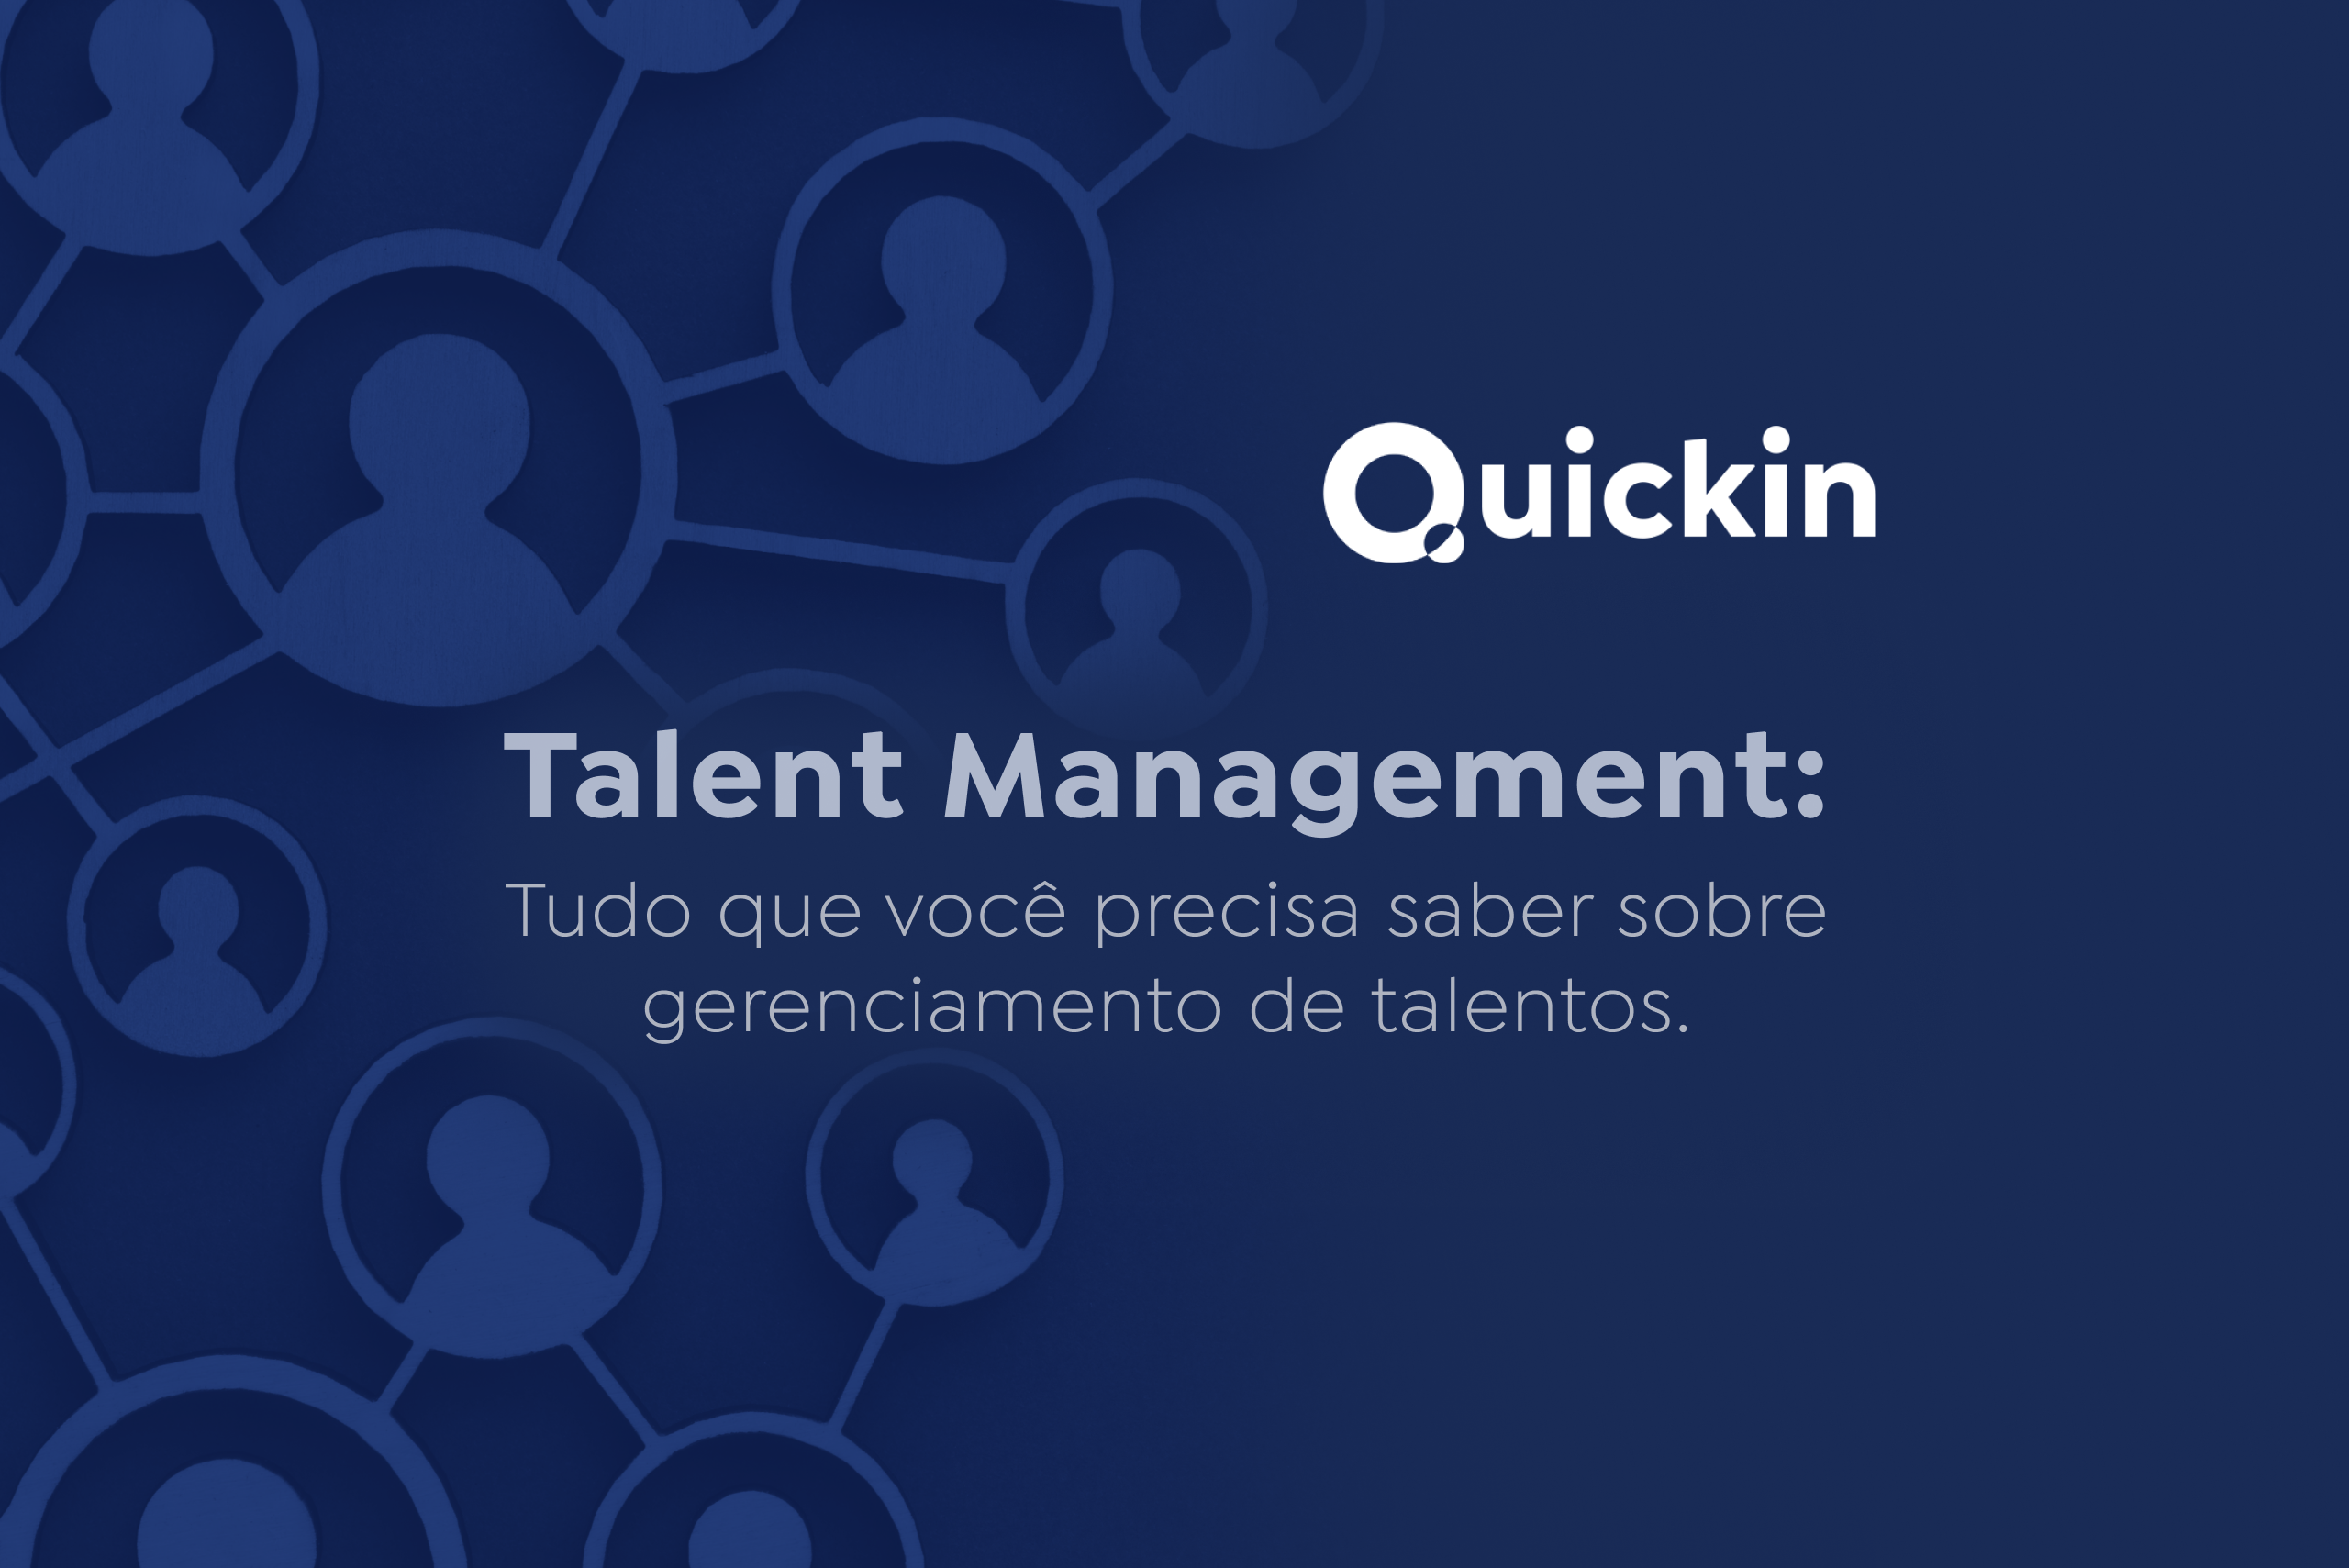 talent management